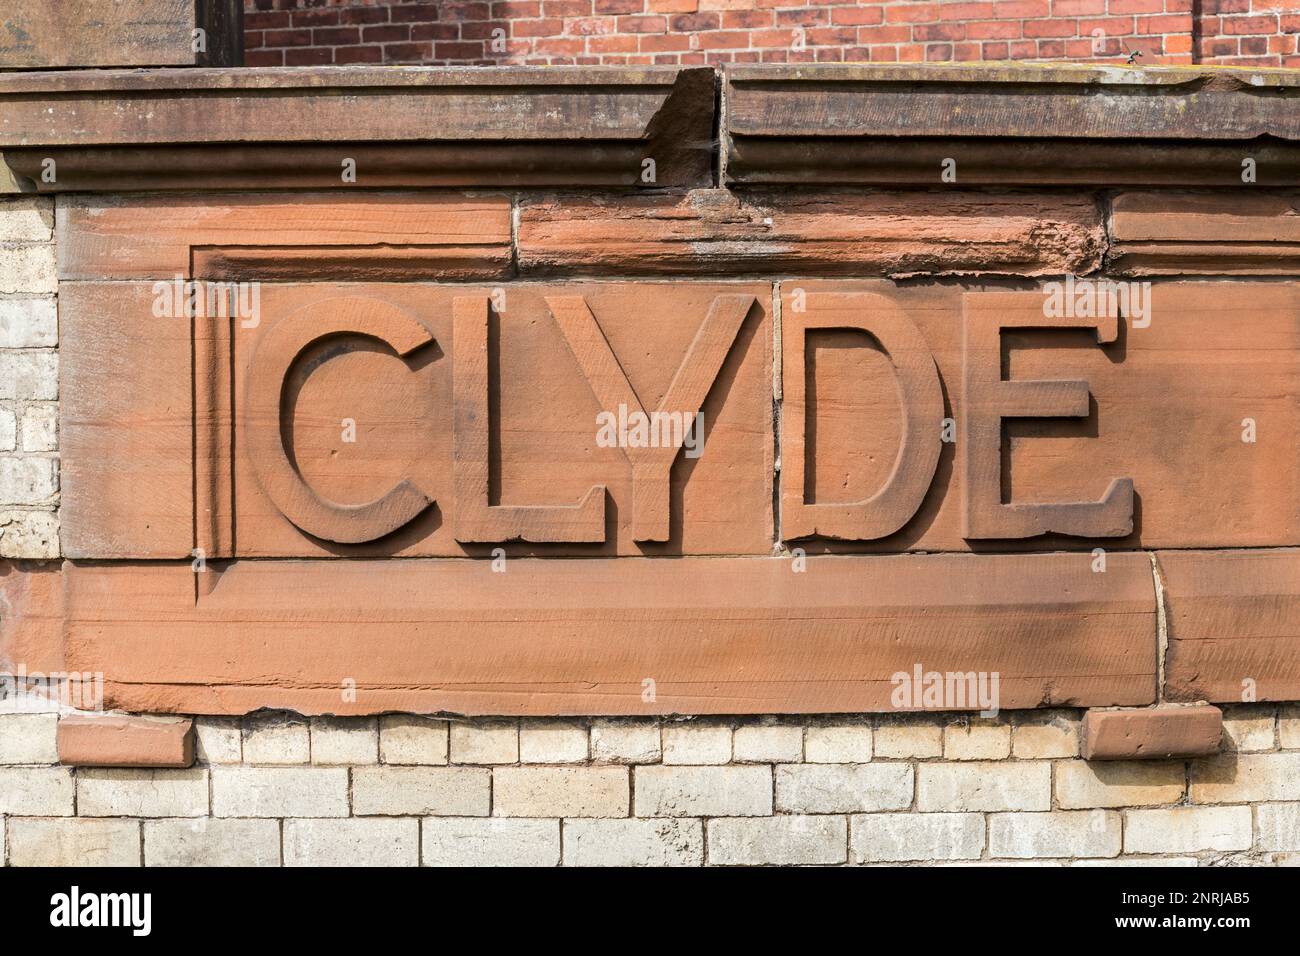 Texte de Clyde sculpté en rouge ashlar à l'ancienne station hydraulique de Quai du Prince, Glasgow, Écosse, Royaume-Uni, Europe Banque D'Images